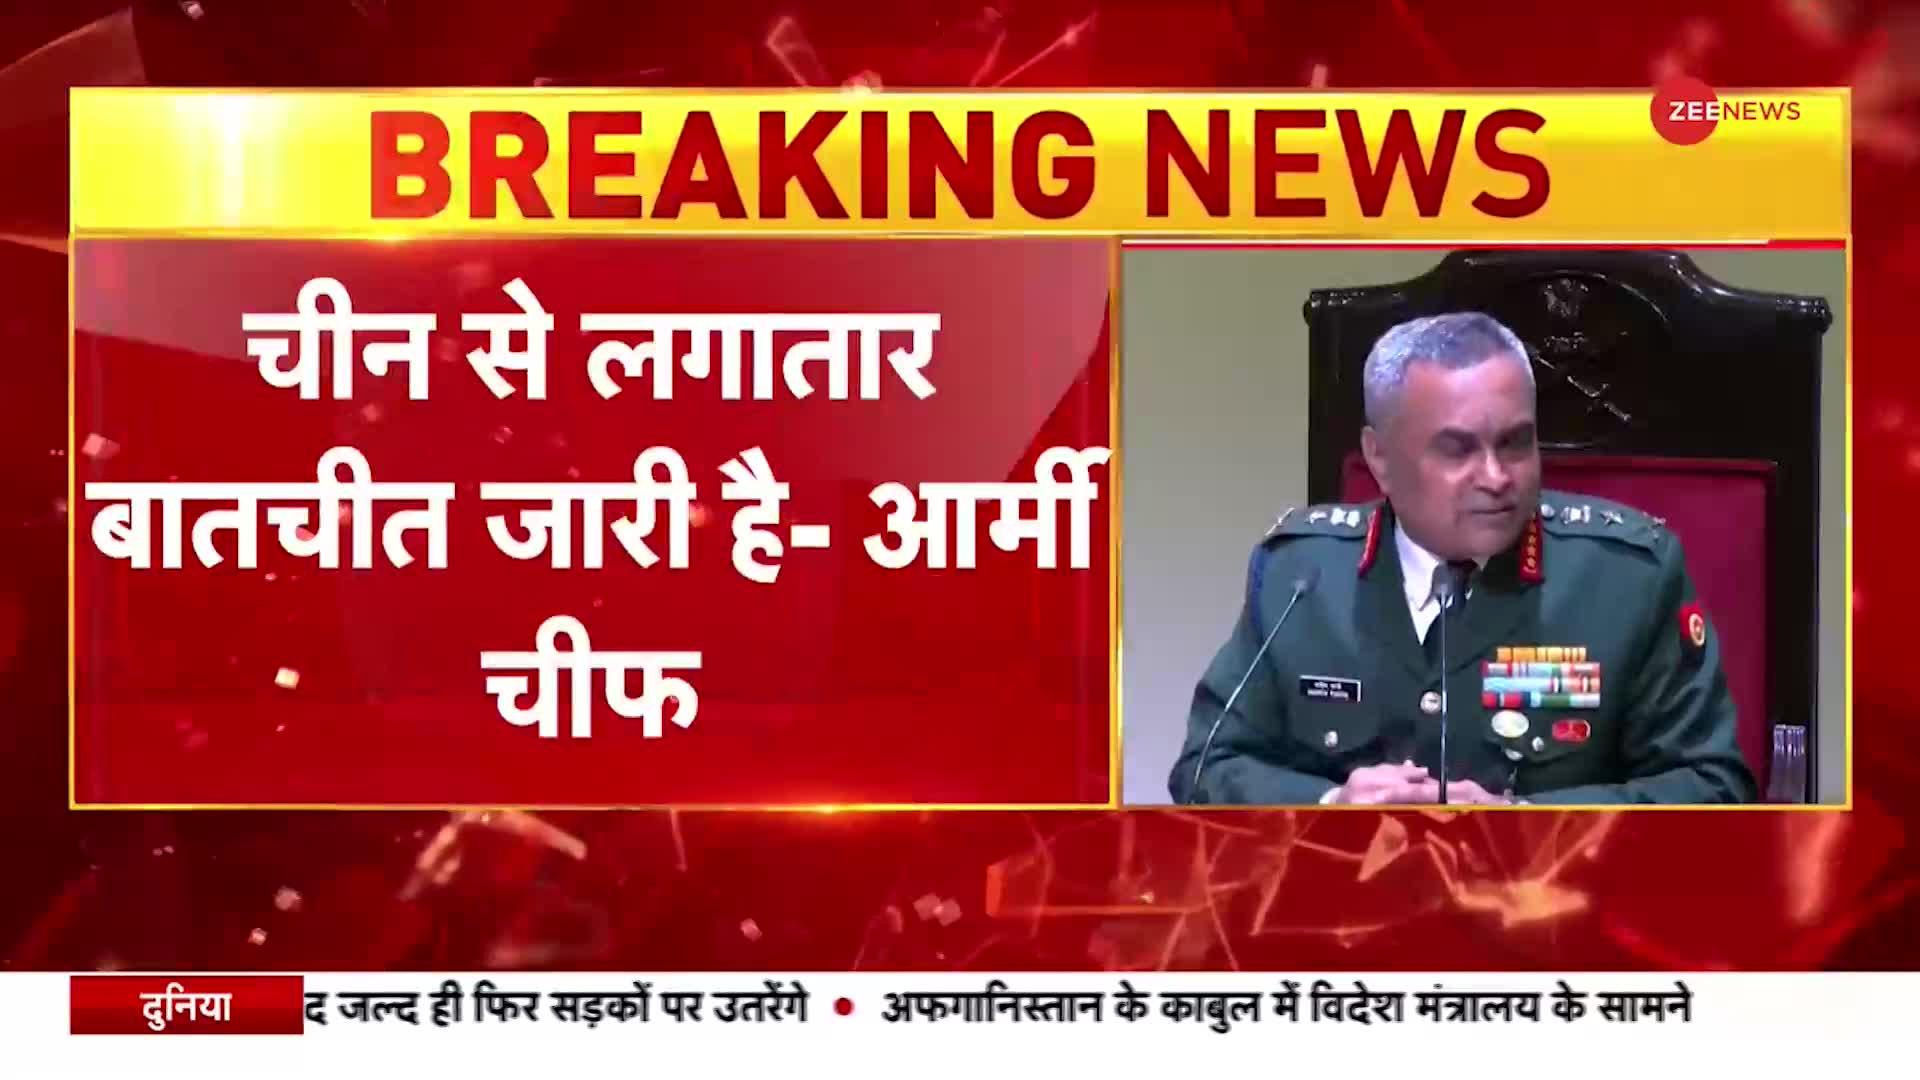 India-China Border Dispute: Army Chief Manoj Pandey का बड़ा बयान, 'उत्तरी सीमा पर हालात नियंत्रण में'